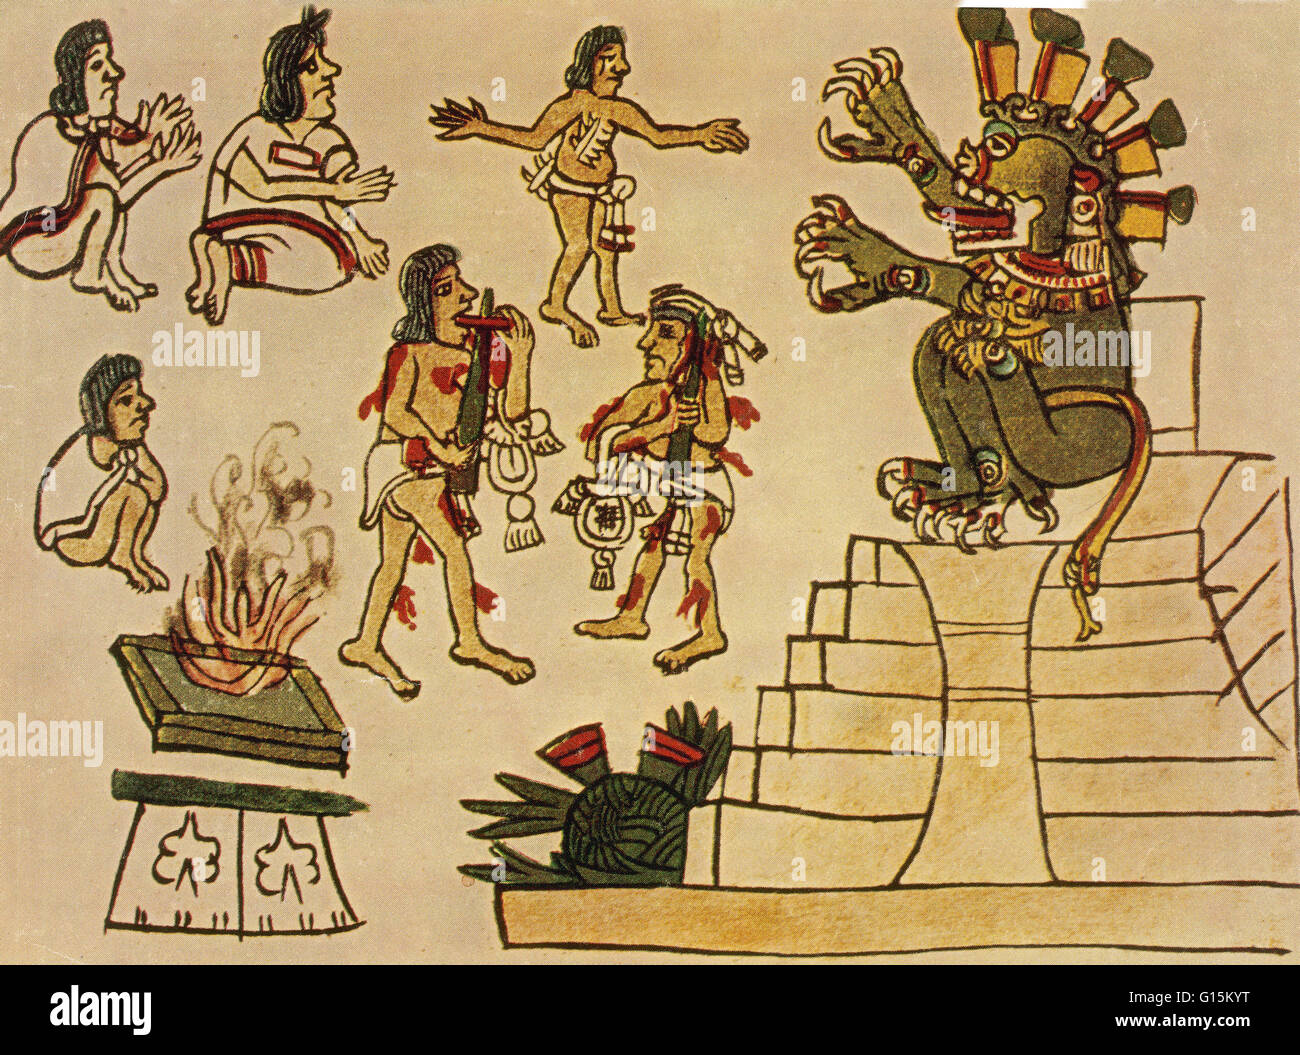 Prêtre aztèque tirer le sang de leur corps avec des brochettes et des couteaux pour apaiser Mictlantecuhtli, seigneur des enfers. Prêtres souvent auto-sacrifice par lequel ils perforé leurs langues, d'oreille, des jambes et des bras. Mictlantecuhtli, dans Aztec mytholog Banque D'Images